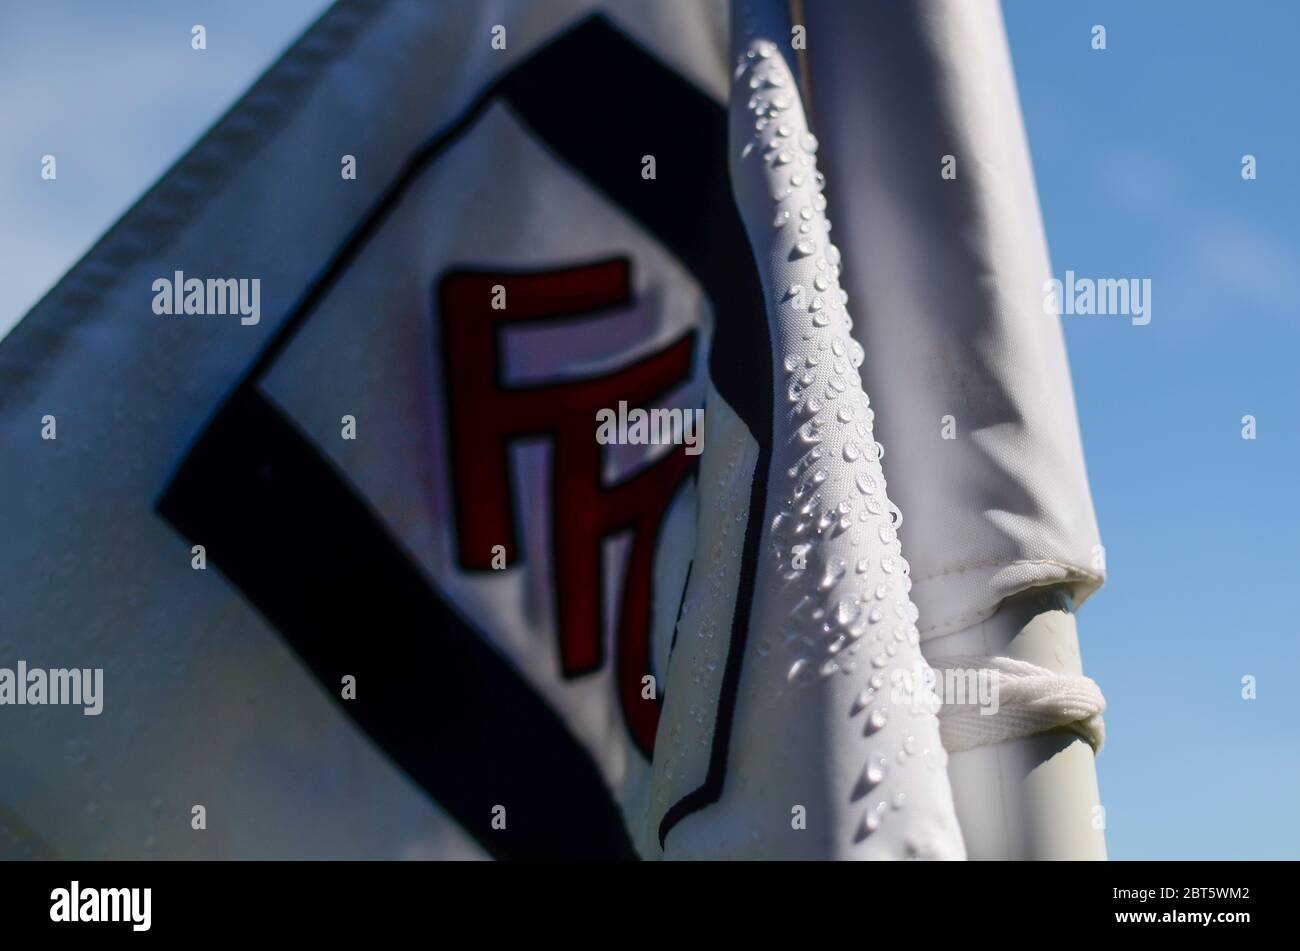 LONDRES, INGLATERRA - 24 DE AGOSTO de 2019: Detalle de una bandera de esquina representada antes del juego del Campeonato de EFL SkyBet 2019/20 entre el Fulham FC y el Nottingham Forest FC en Craven Cottage. Foto de stock